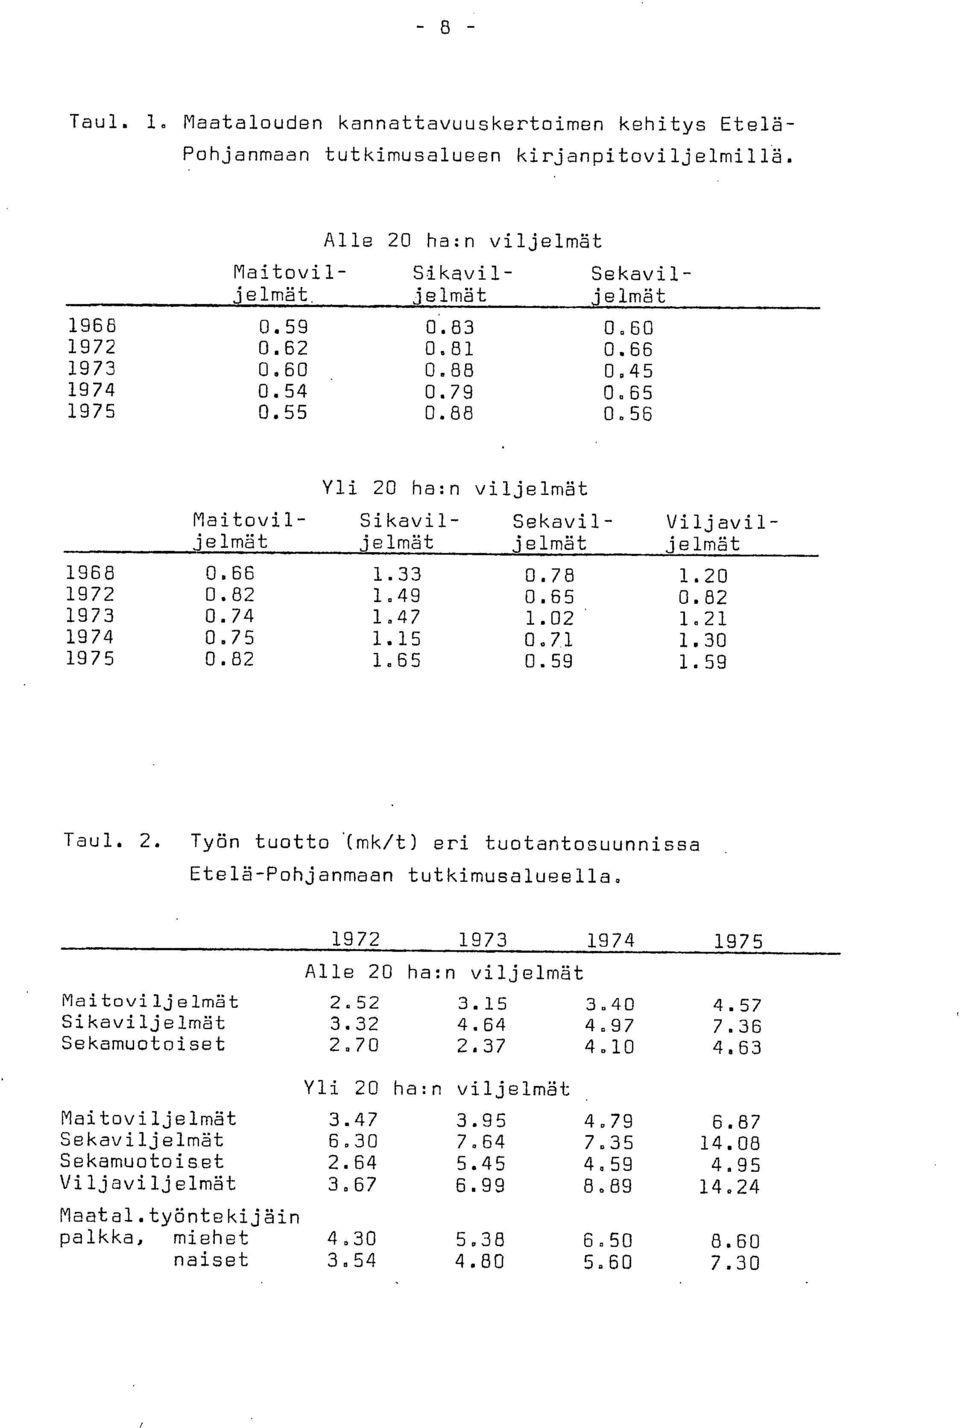 20 1972 0.82 1.49 0.65 0.82 1973 0.74 1.47 1.02 1.21 1974 0.75 1.15 0.71 1.30 1975 0.82 1.65 0.59 1.59 Taul. 2. Työn tuotto.(mk/t) eri tuotantosuunnissa Etelä-Pohjanmaan tutkimusalueella.